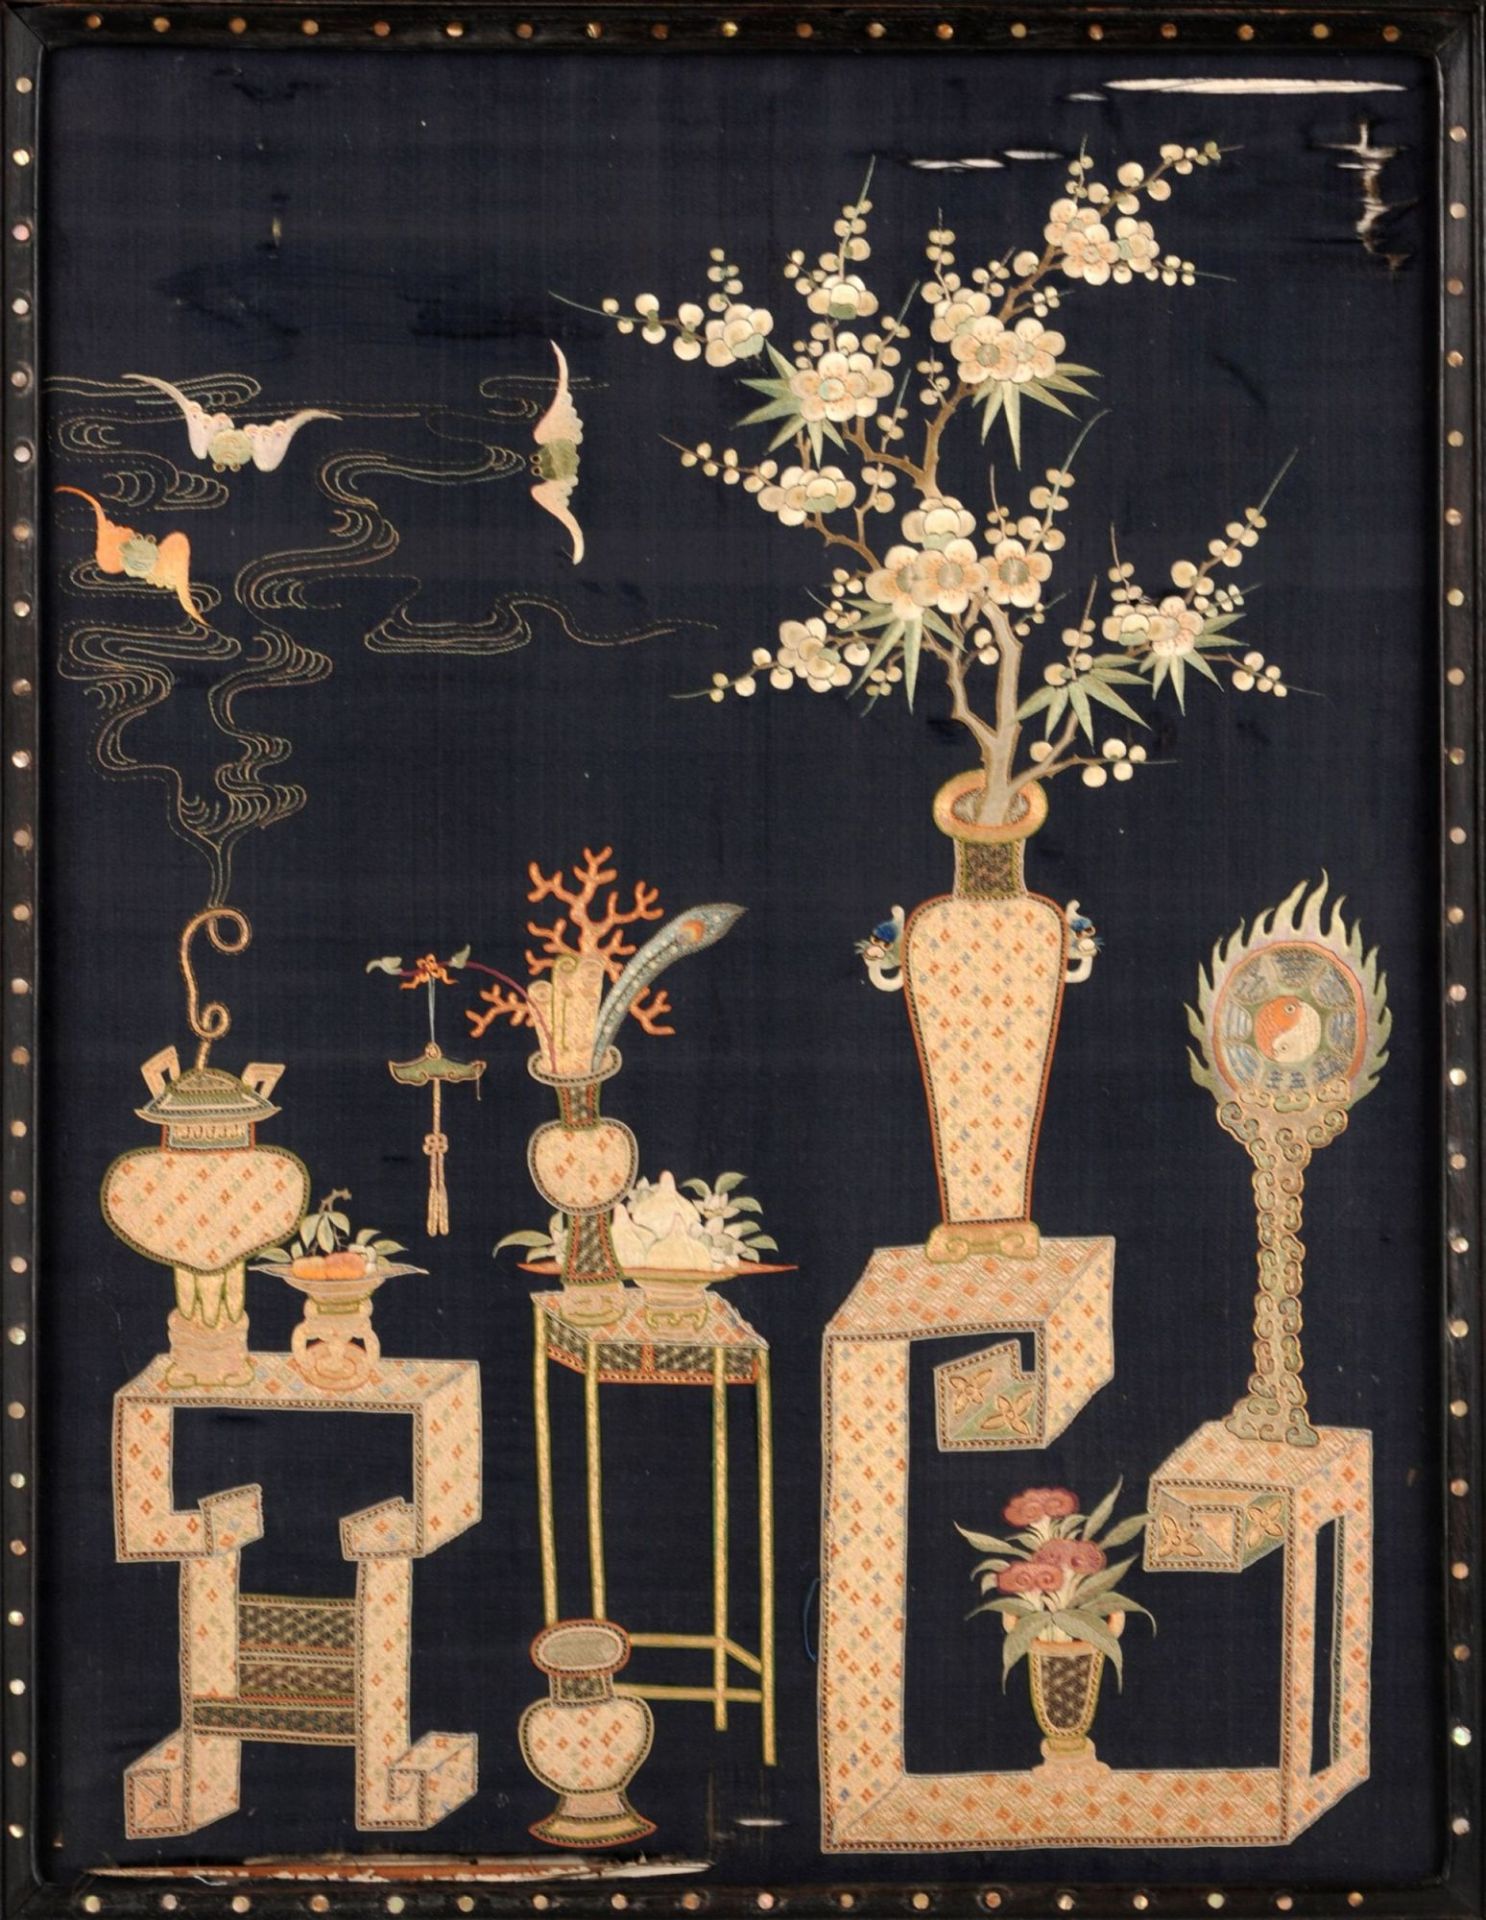 Tischparavent mit Perlmuttinkrustationen. China. Späte Qing-Dynasty, Mitte 19. Jh. - Bild 10 aus 13